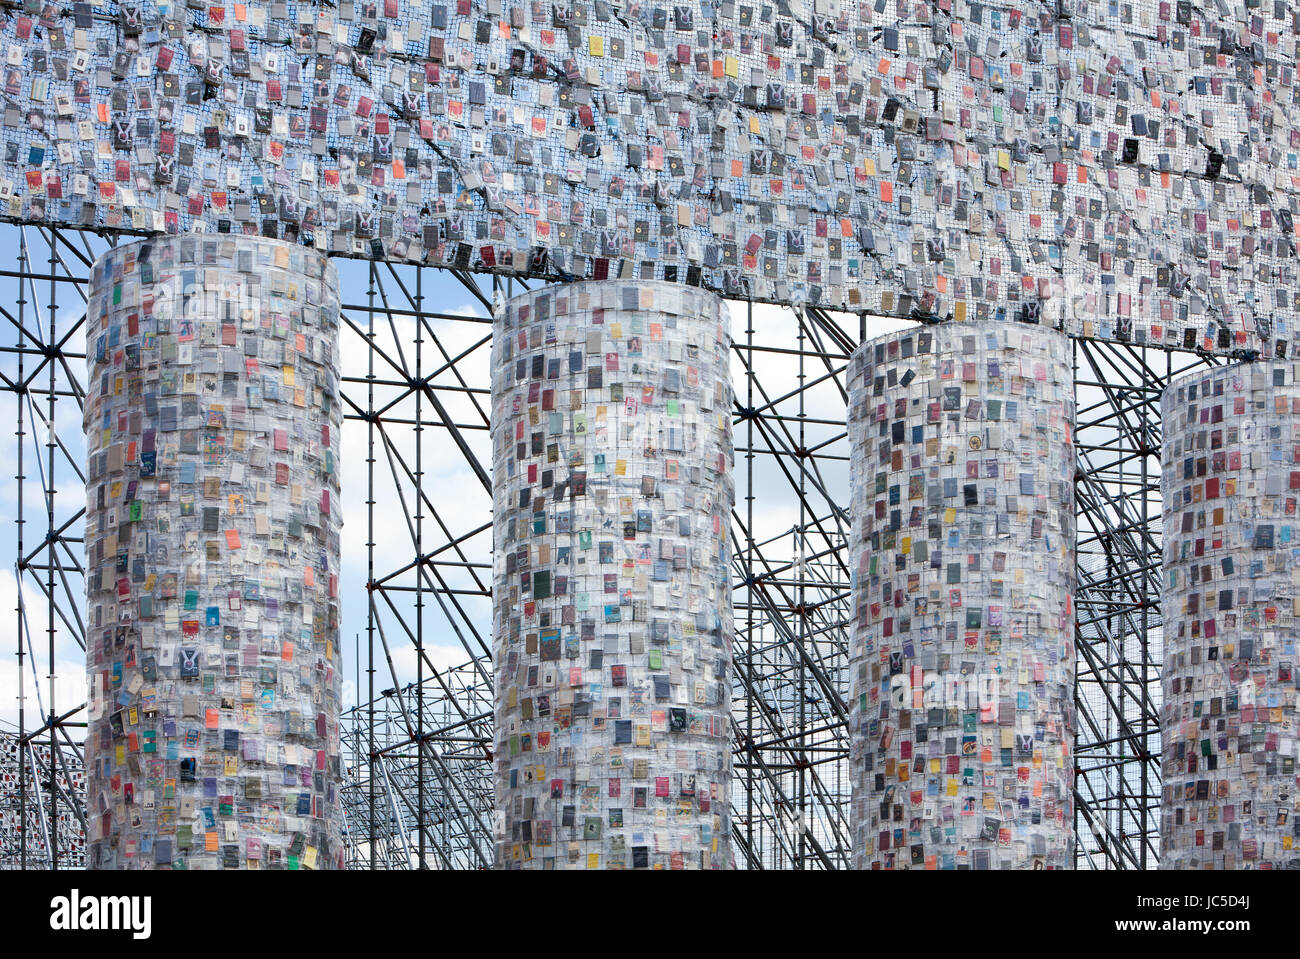 'Il Partenone di libri' dell'Argentino artista concettuale Marta Minujin, documenta 14 mostra, 2017, Kassel, Germania, Europa Foto Stock